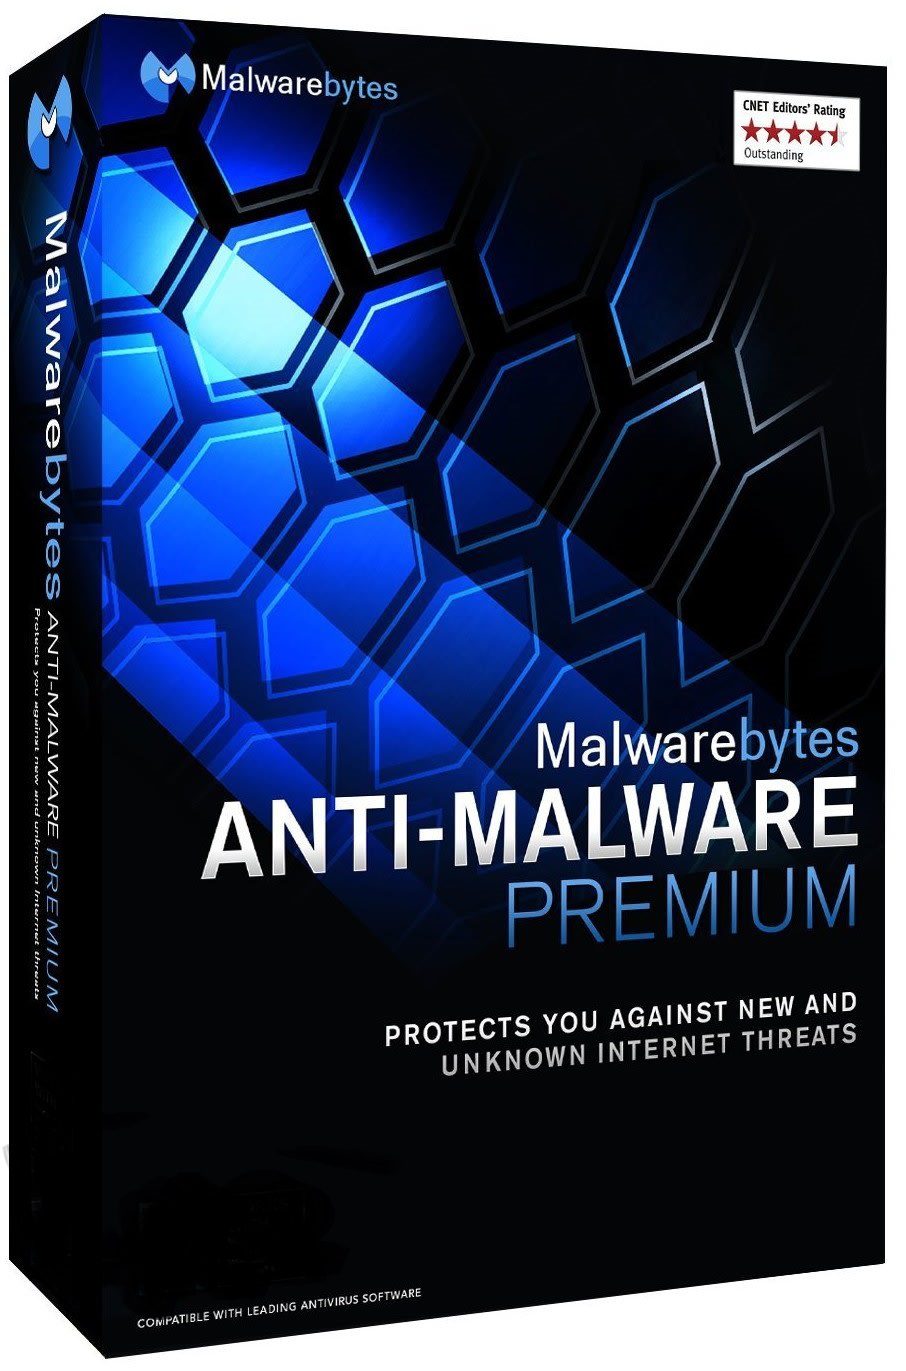 Malwarebytes Anti-Malware Premium With serial keys